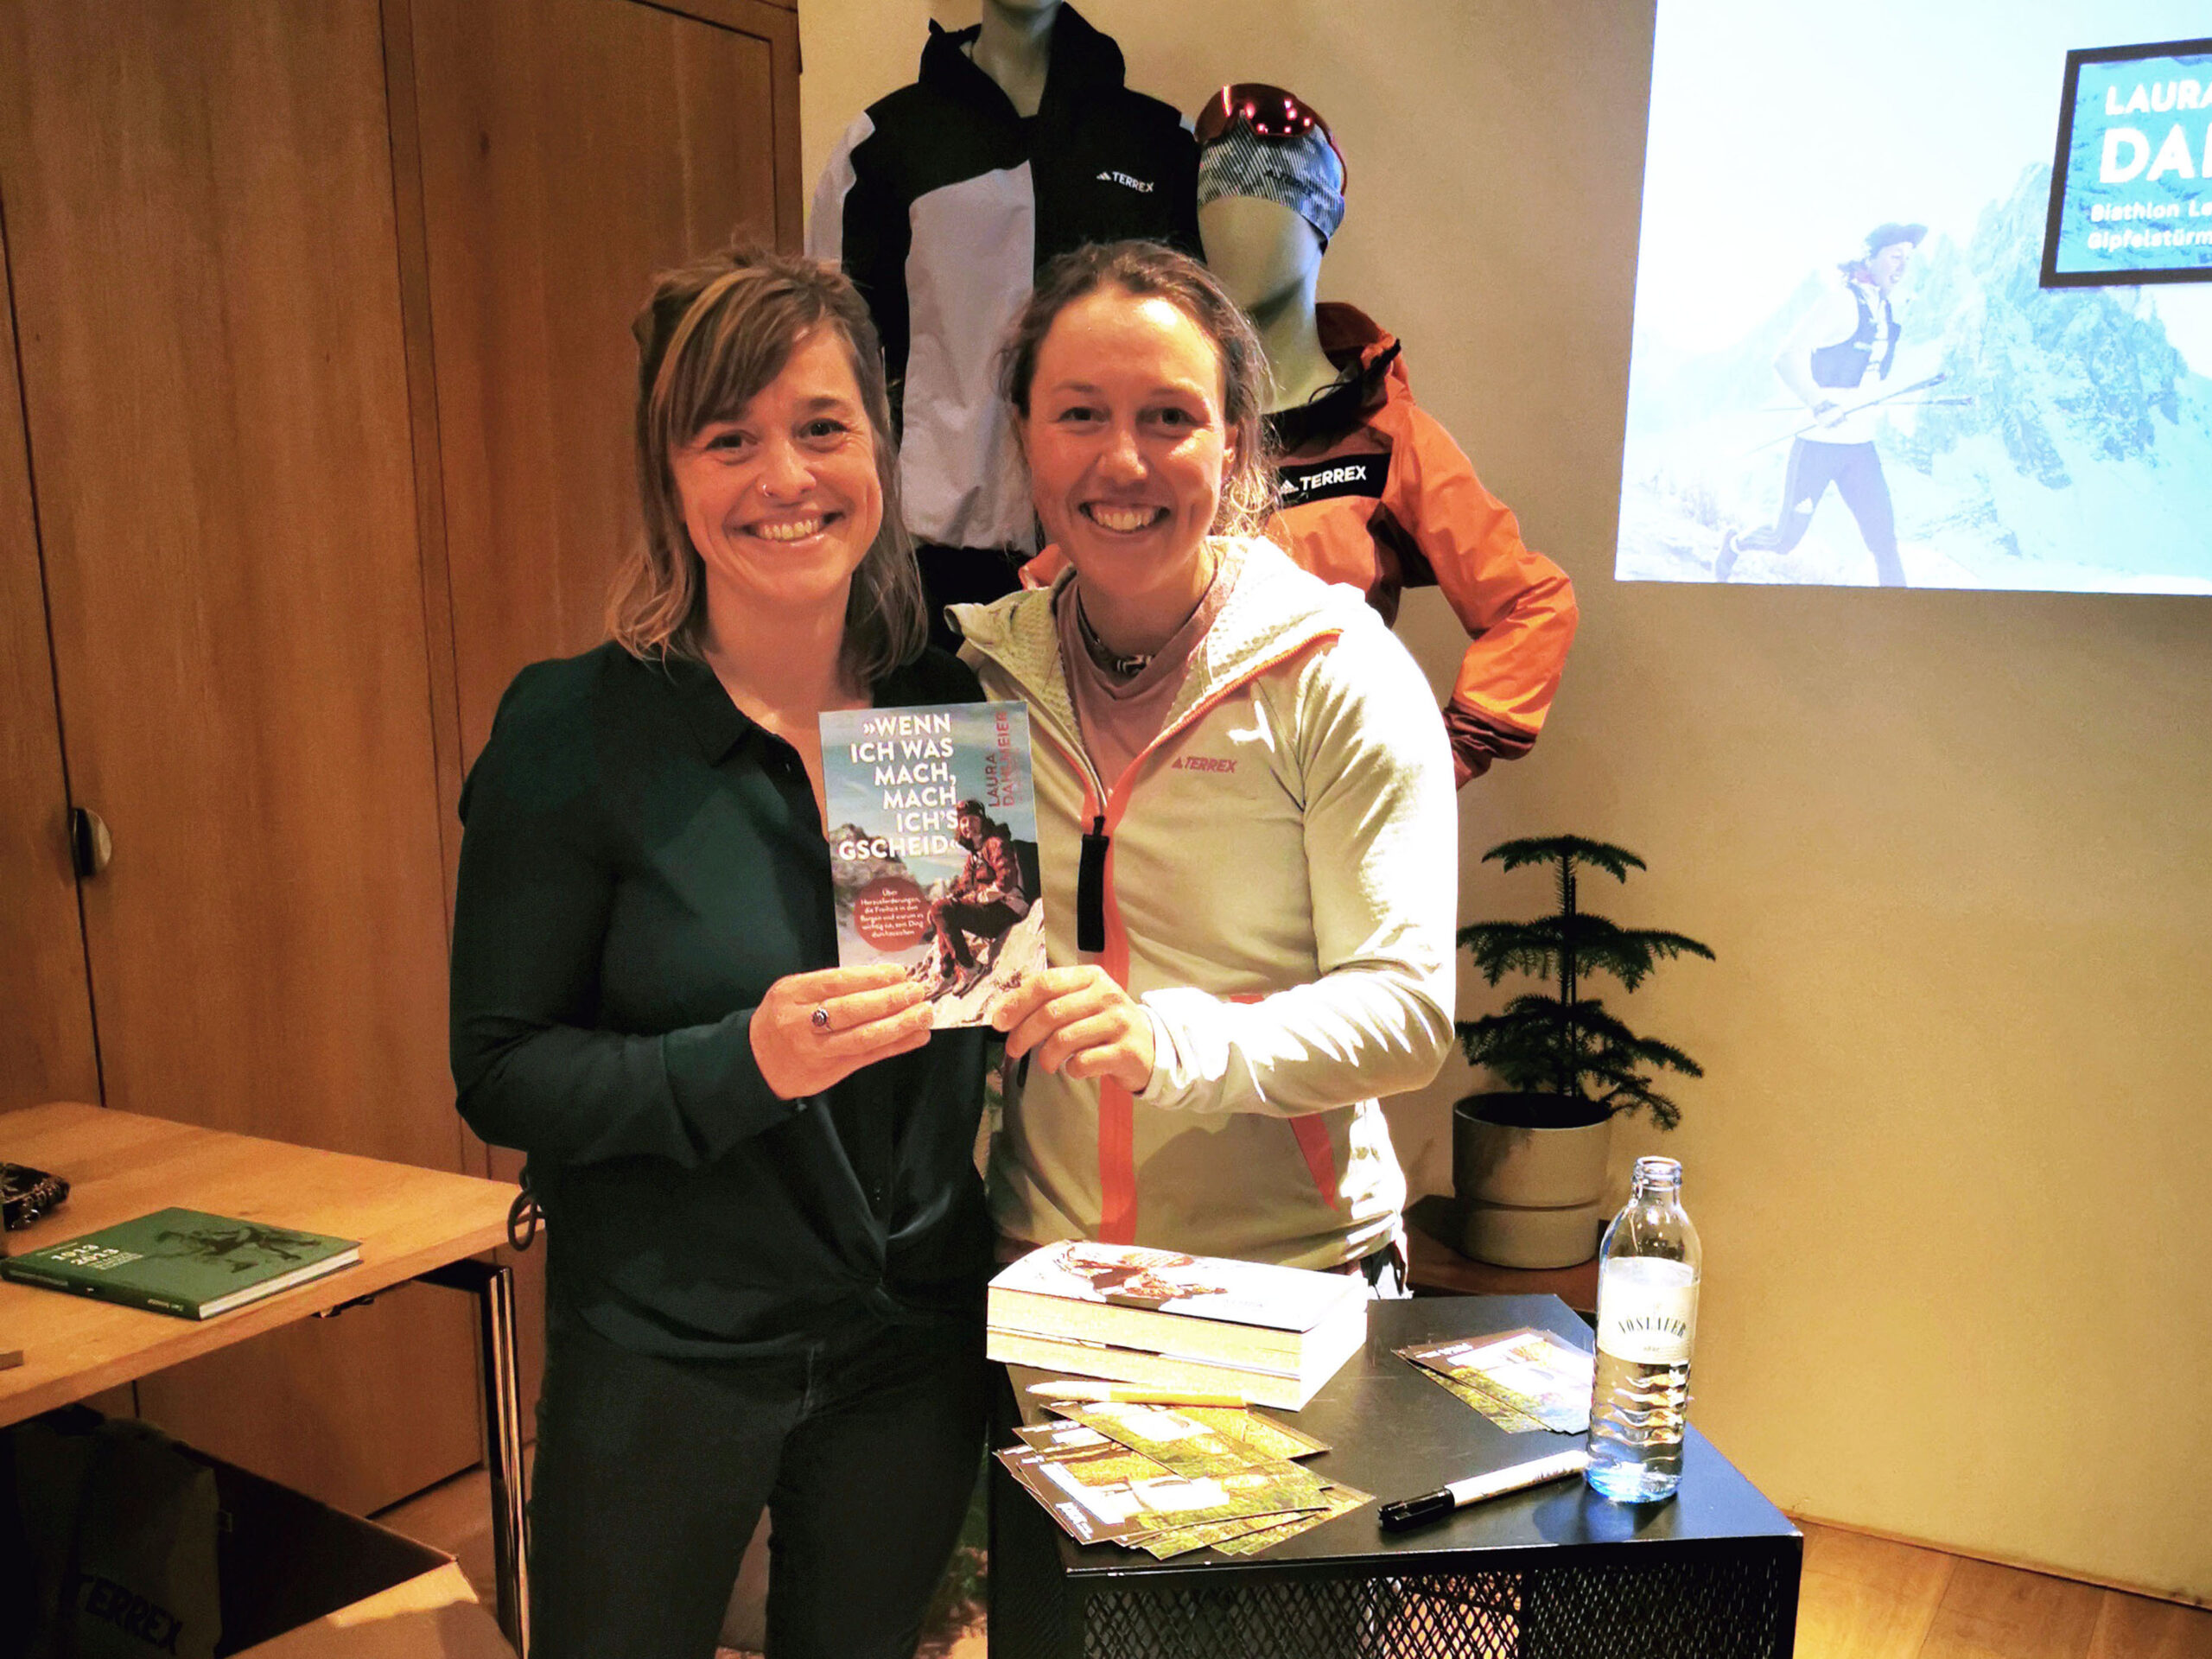 Biathlon-Olympiasiegerin Laura Dahlmeier und ihre Co-Autorin Franziska Kucera halten bei einer Buchvorstellung im Sporthaus Schuster strahlend ihr neues Buch in die Kamera.